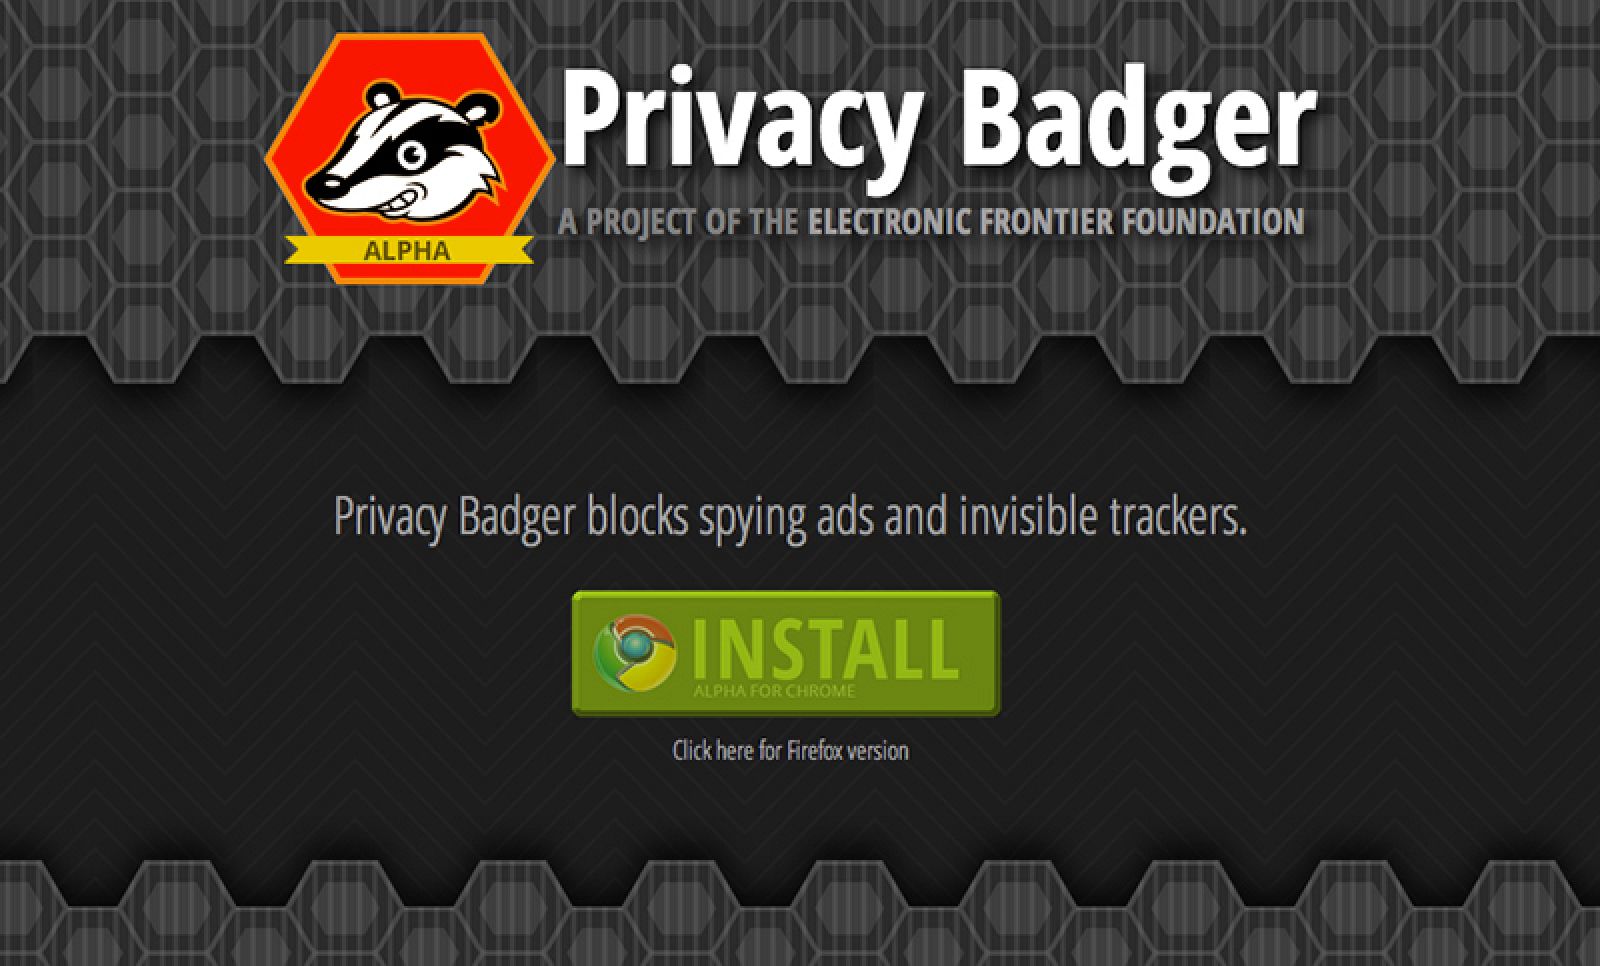 Portada de la web de descarga de Privacy Badger